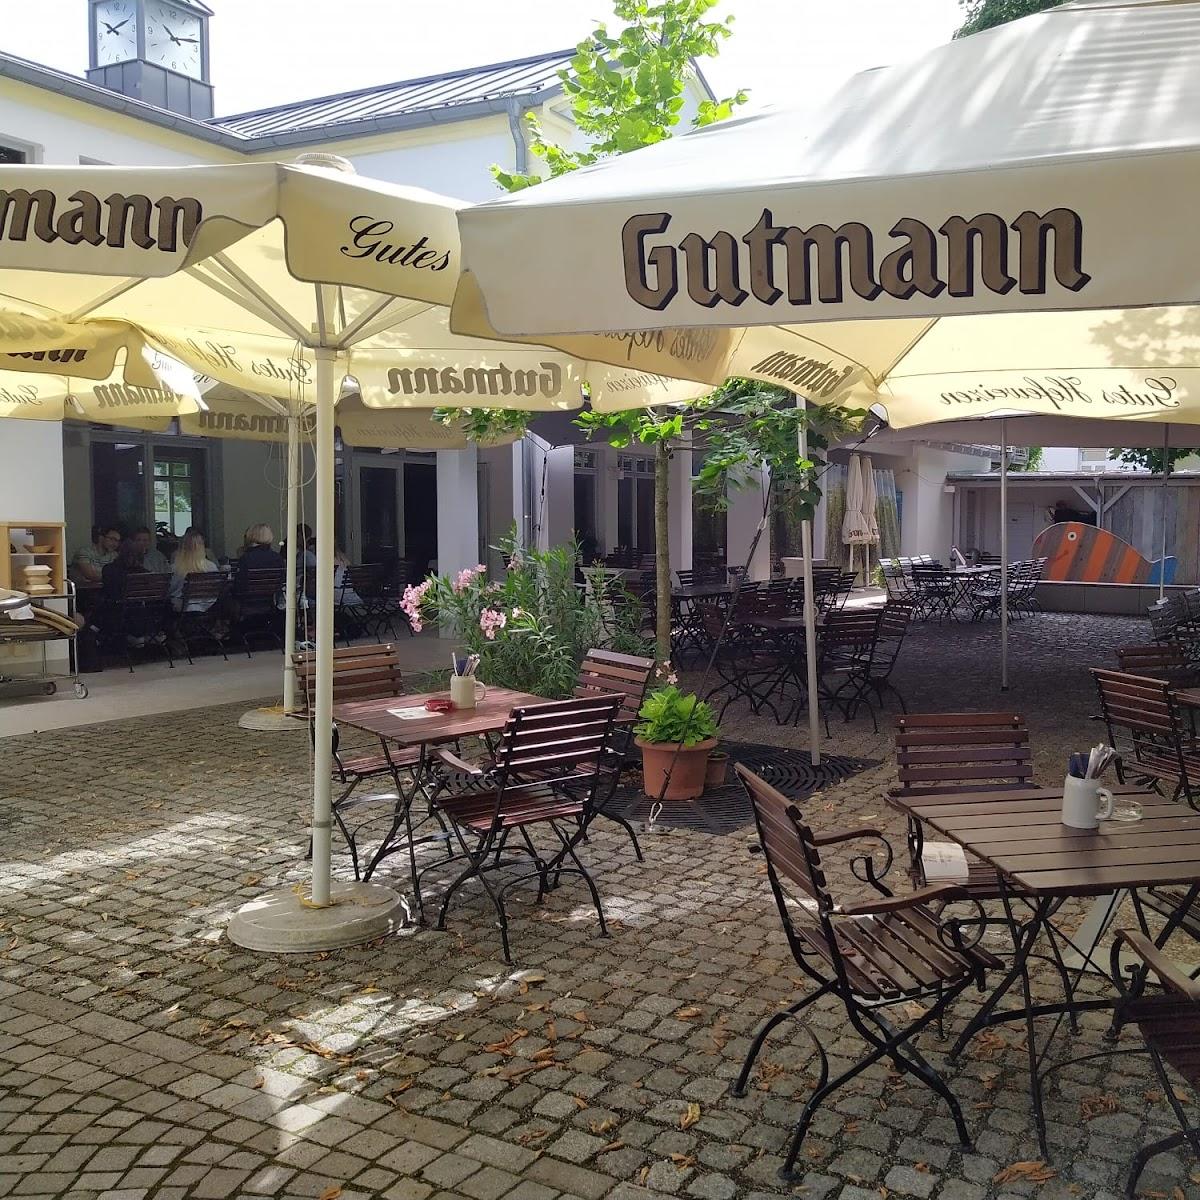 Restaurant "Gutmann am Dutzendteich" in Nürnberg